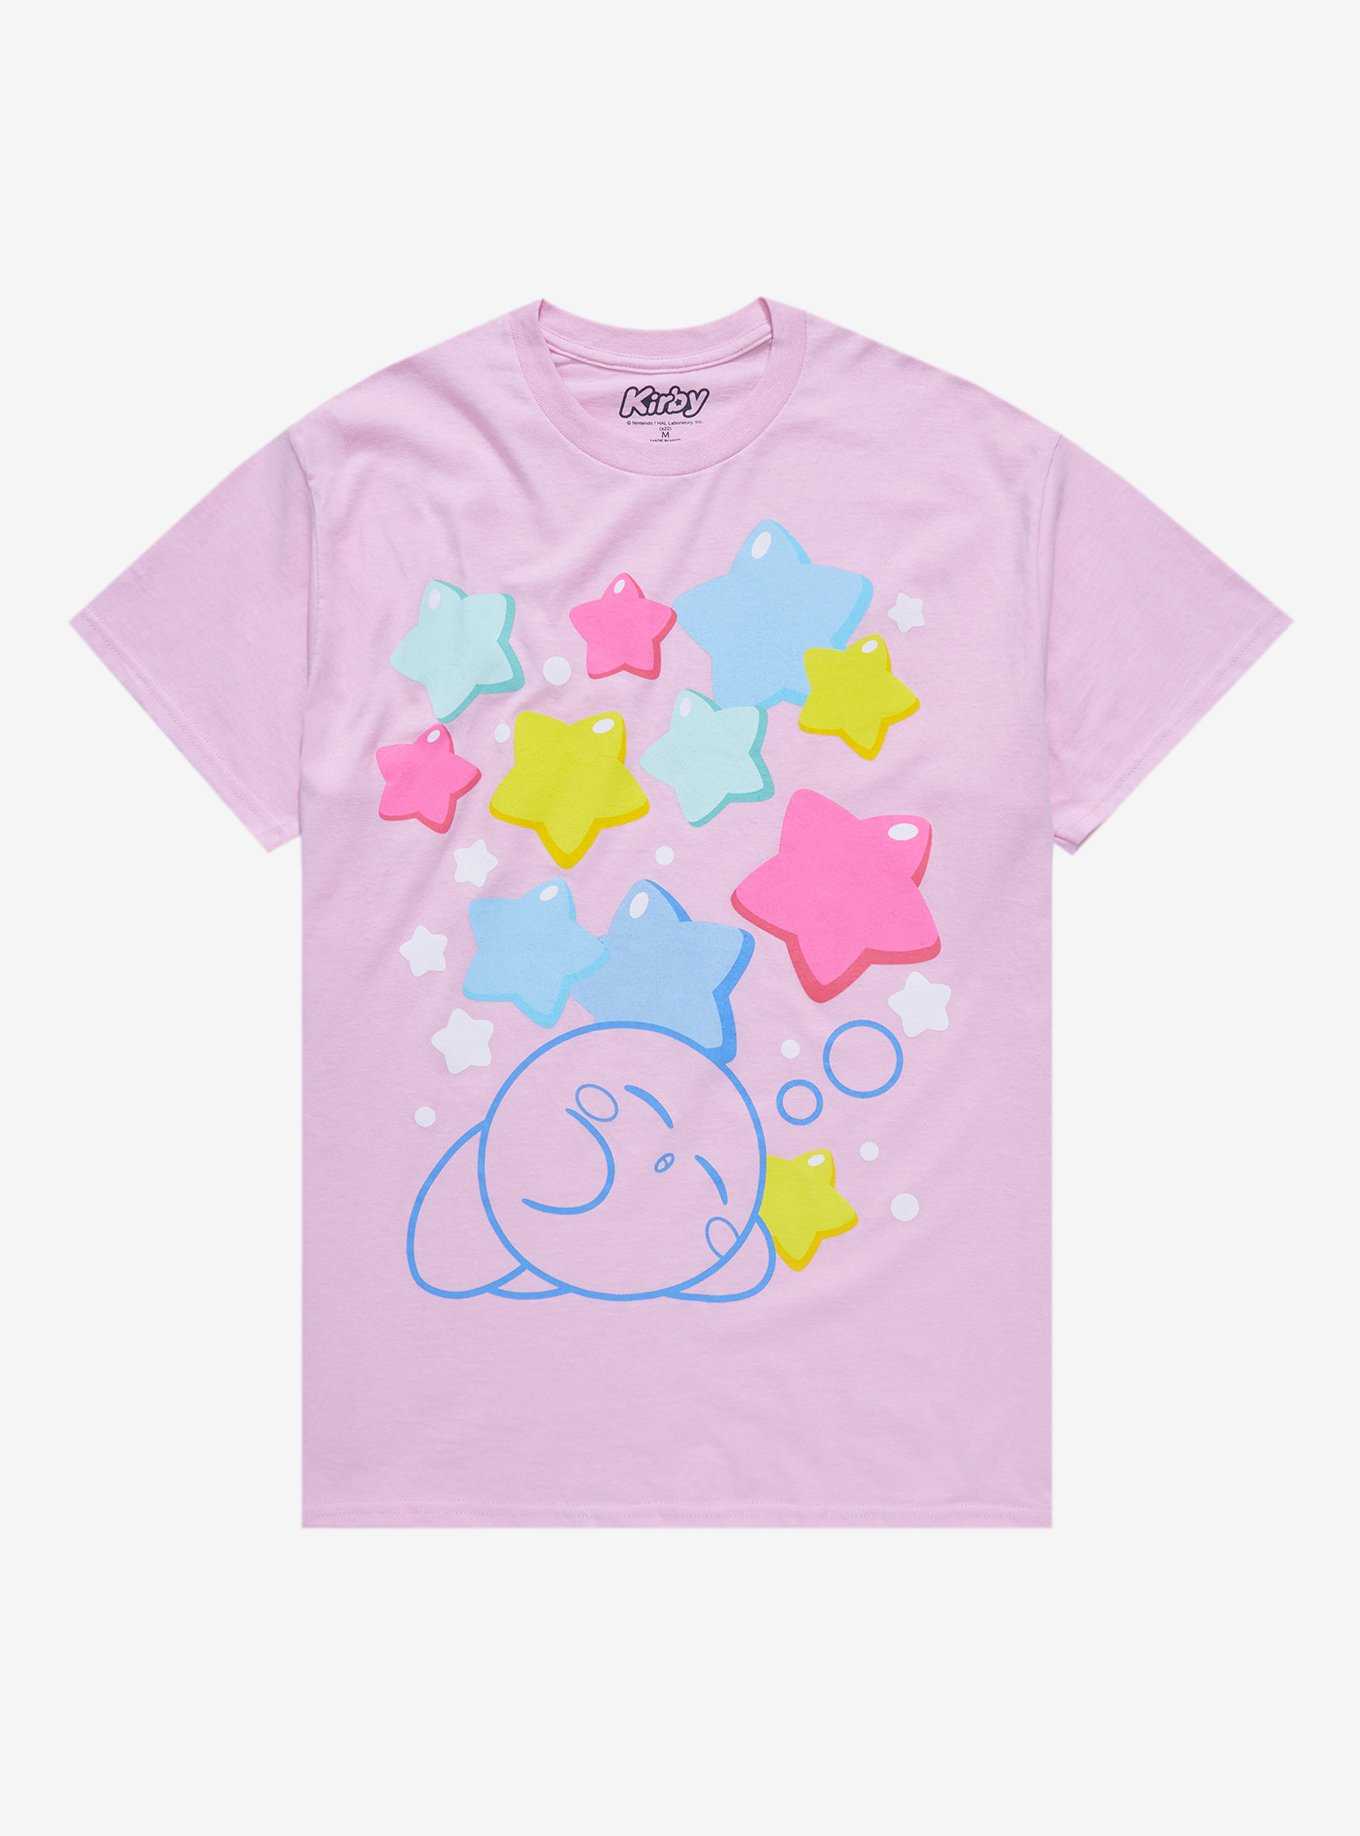 Kirby Pastel Stars Boyfriend Fit Girls T-Shirt, , hi-res